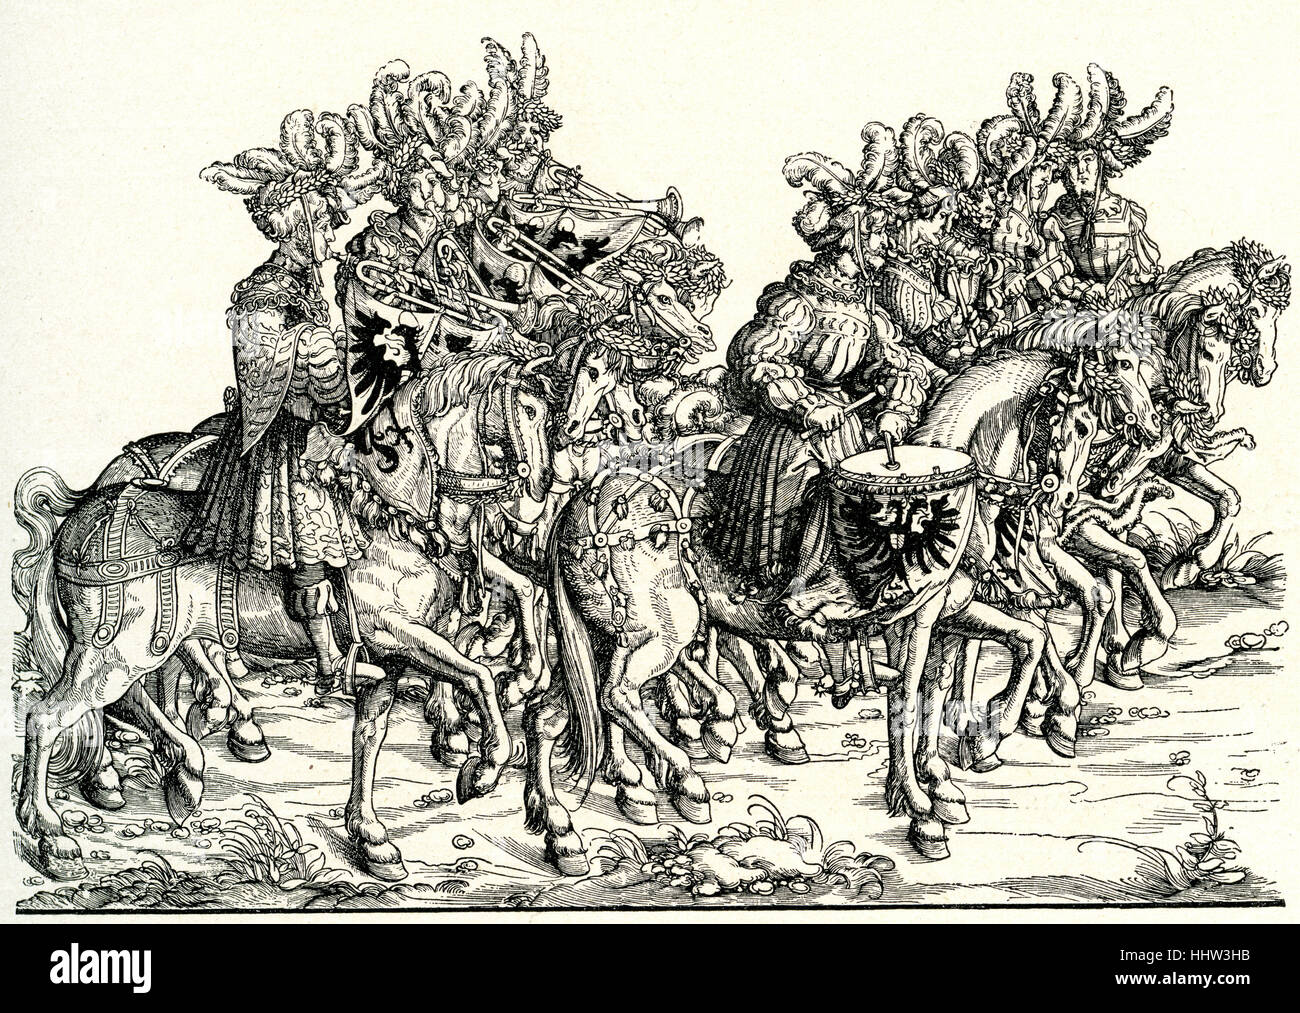 Los trompetistas y percusionistas a caballo, desfile triunfal de Maximiliano I, emperador del Sacro Imperio Romano Germánico (22 de marzo de 1459 - 12 de enero de Foto de stock